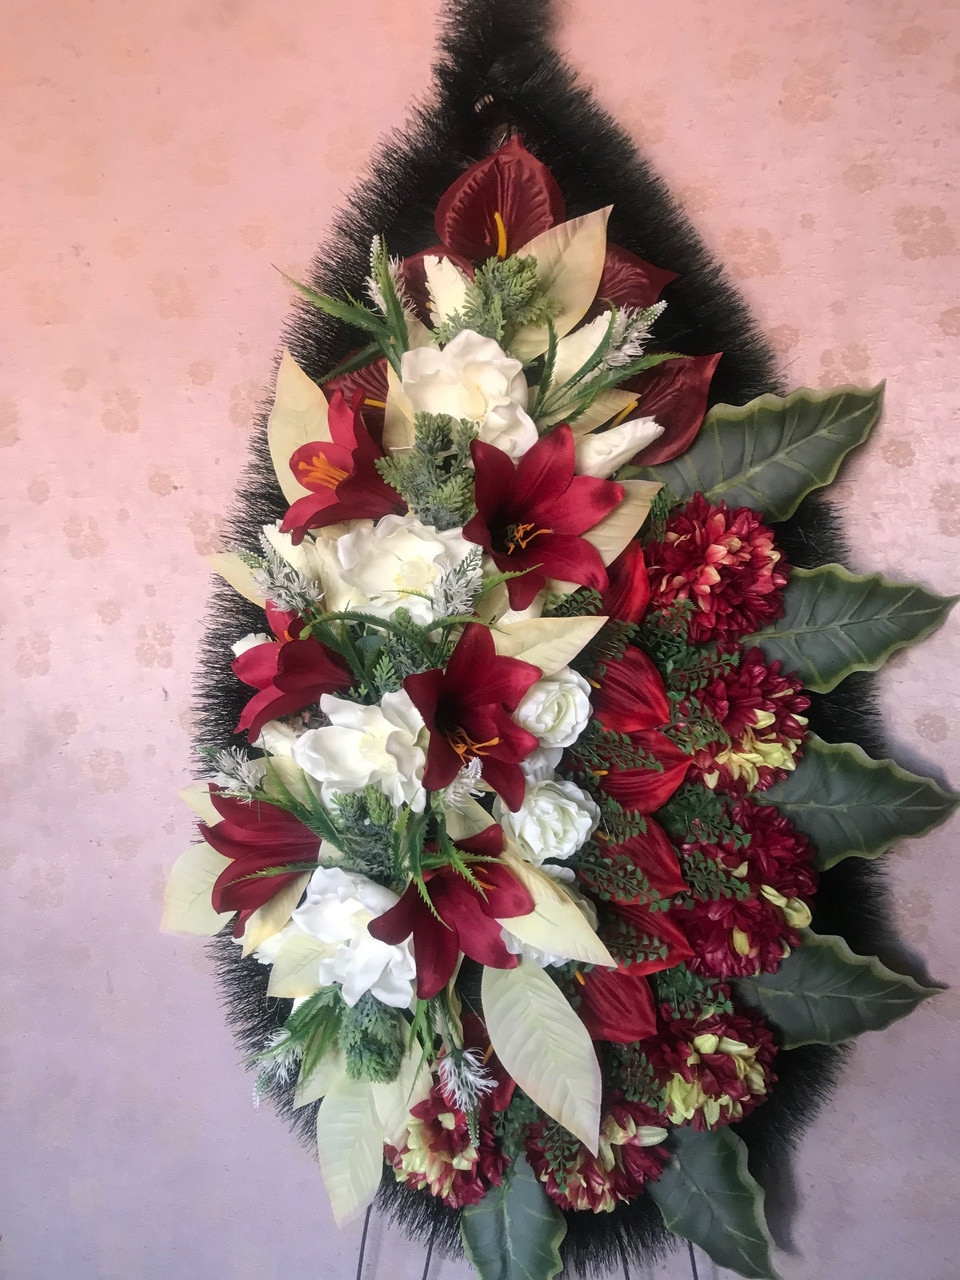 Вінок похоронний з штучних квітів (ЕВ №1 Елітний), розміри 175*75см, доставка по Україні.